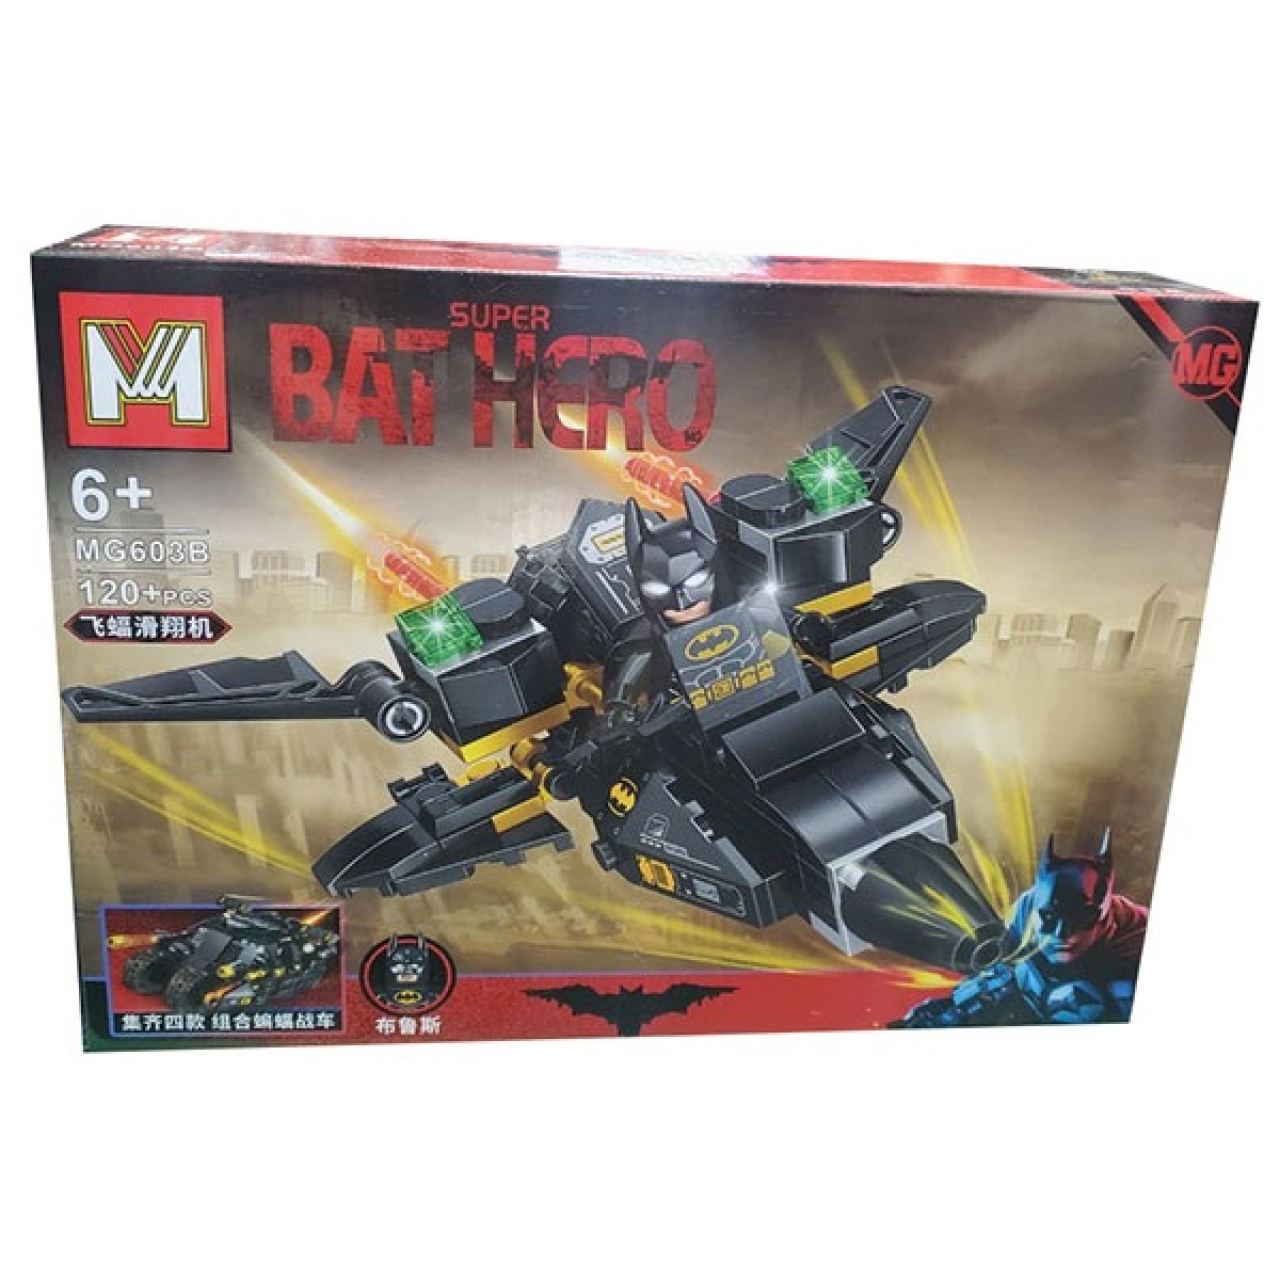 ساختنی ام مدل Bat Hero کد 603B